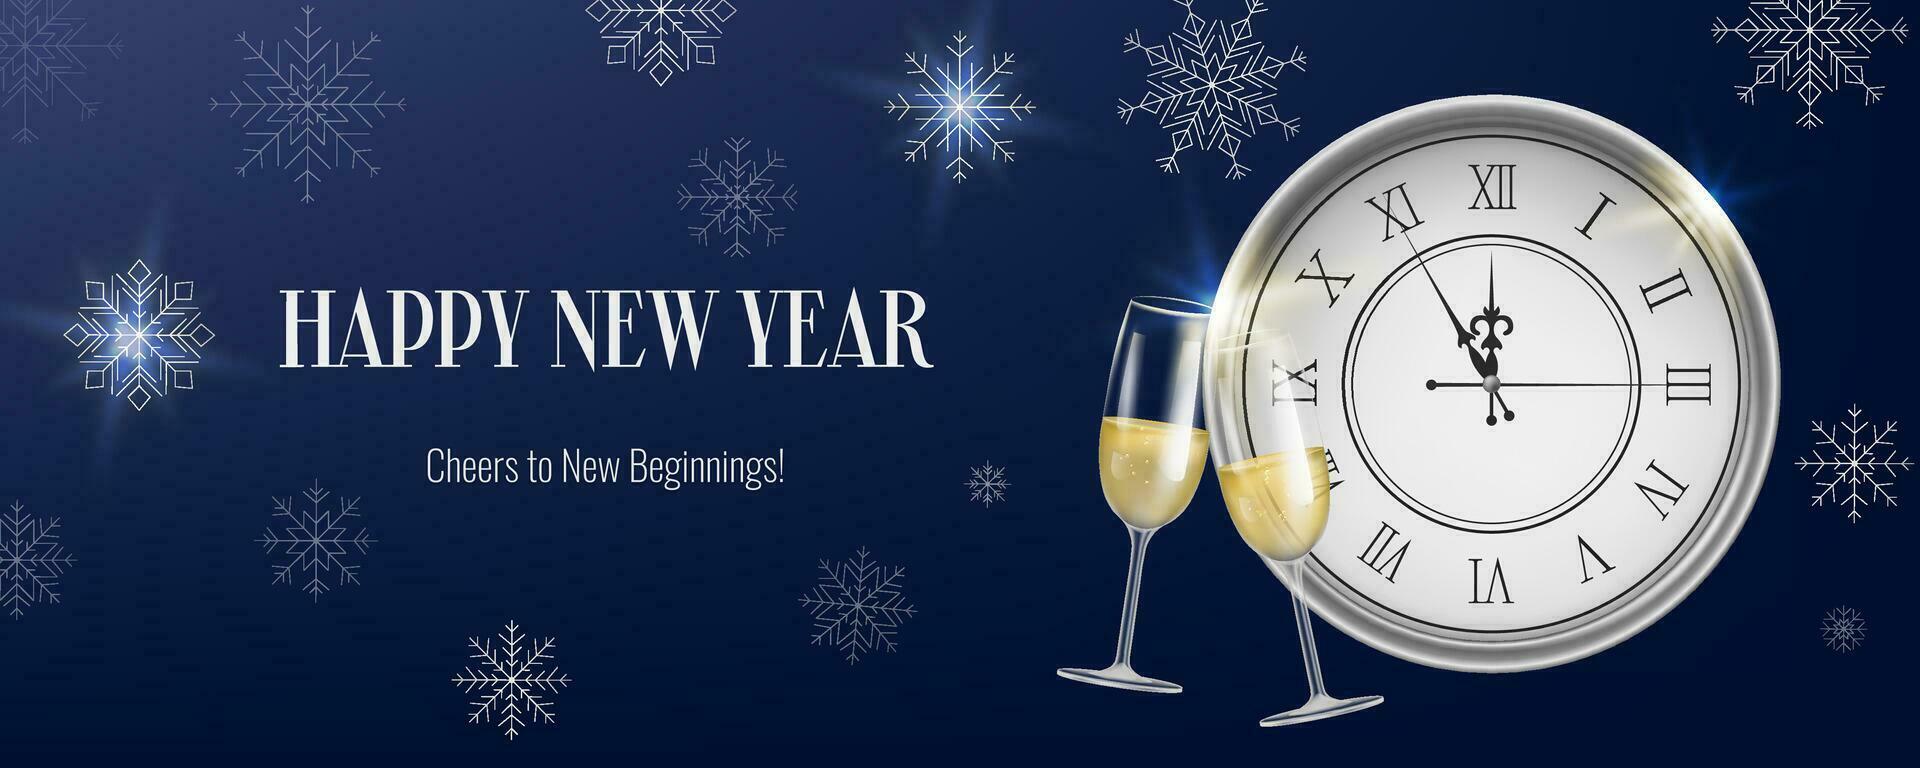 realista noche nuevo año bandera, presentando un reloj, copos de nieve y champán. oro y Navidad temática decoraciones adecuado para invitaciones, saludos, y evento promociones no ai generado. vector